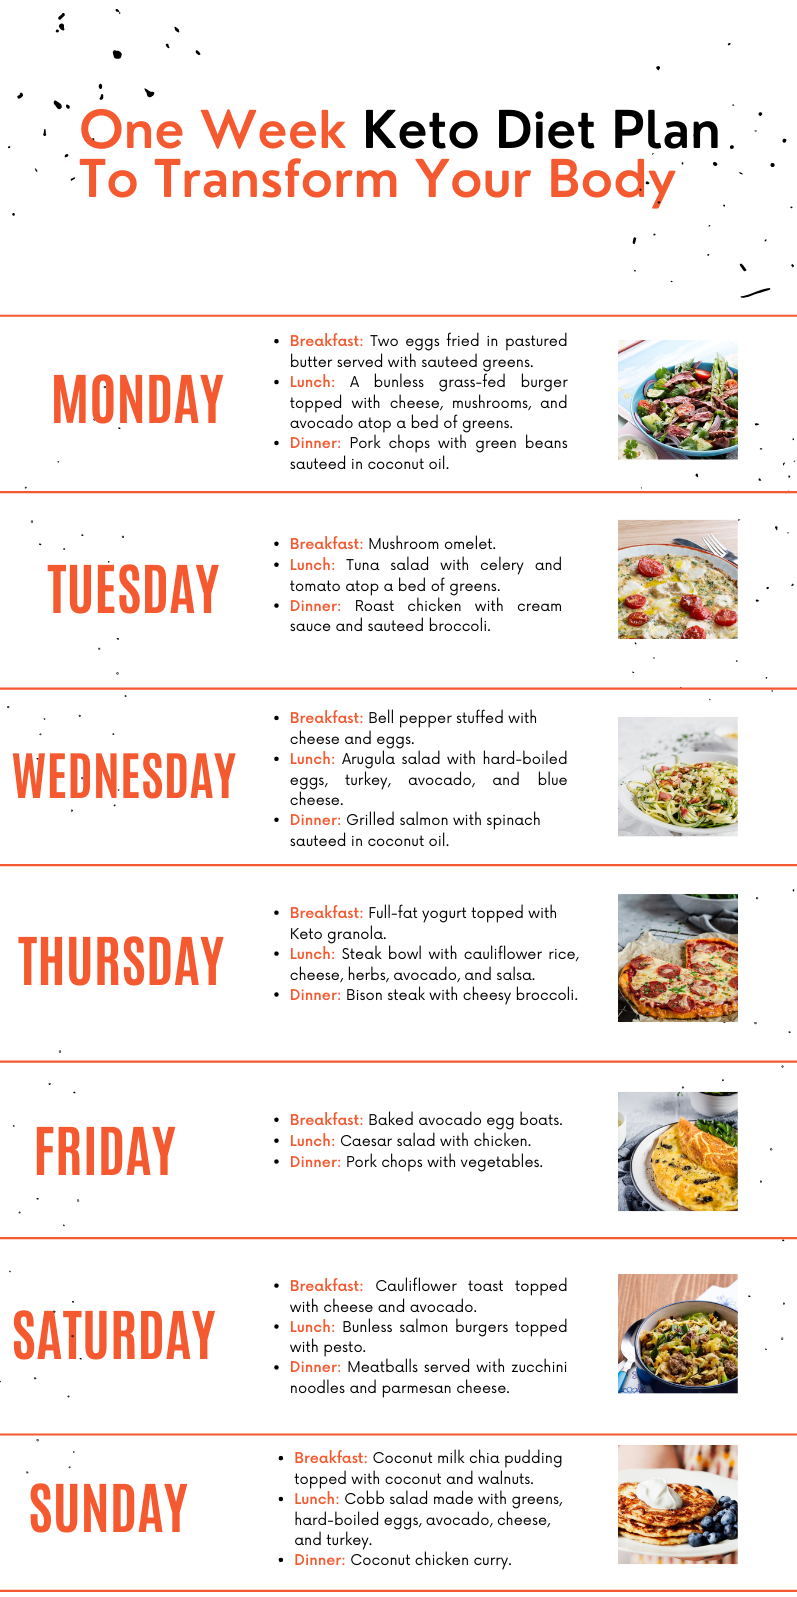 One Week Keto Diet Plan Image